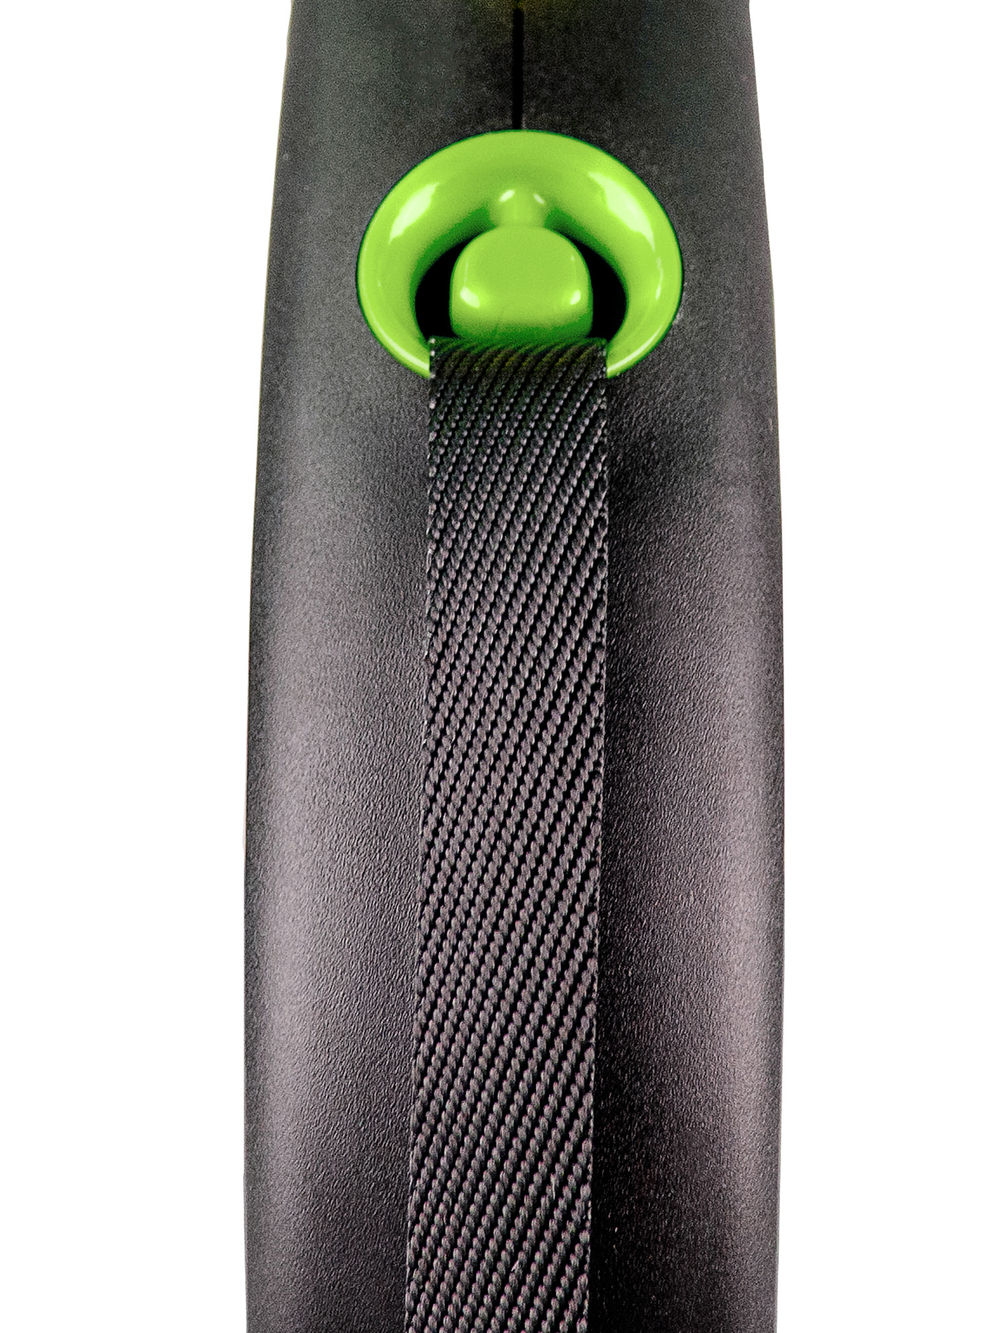 Flexi Black Design рулетка, M (до 25 кг), лента, черный/зеленый, 5м